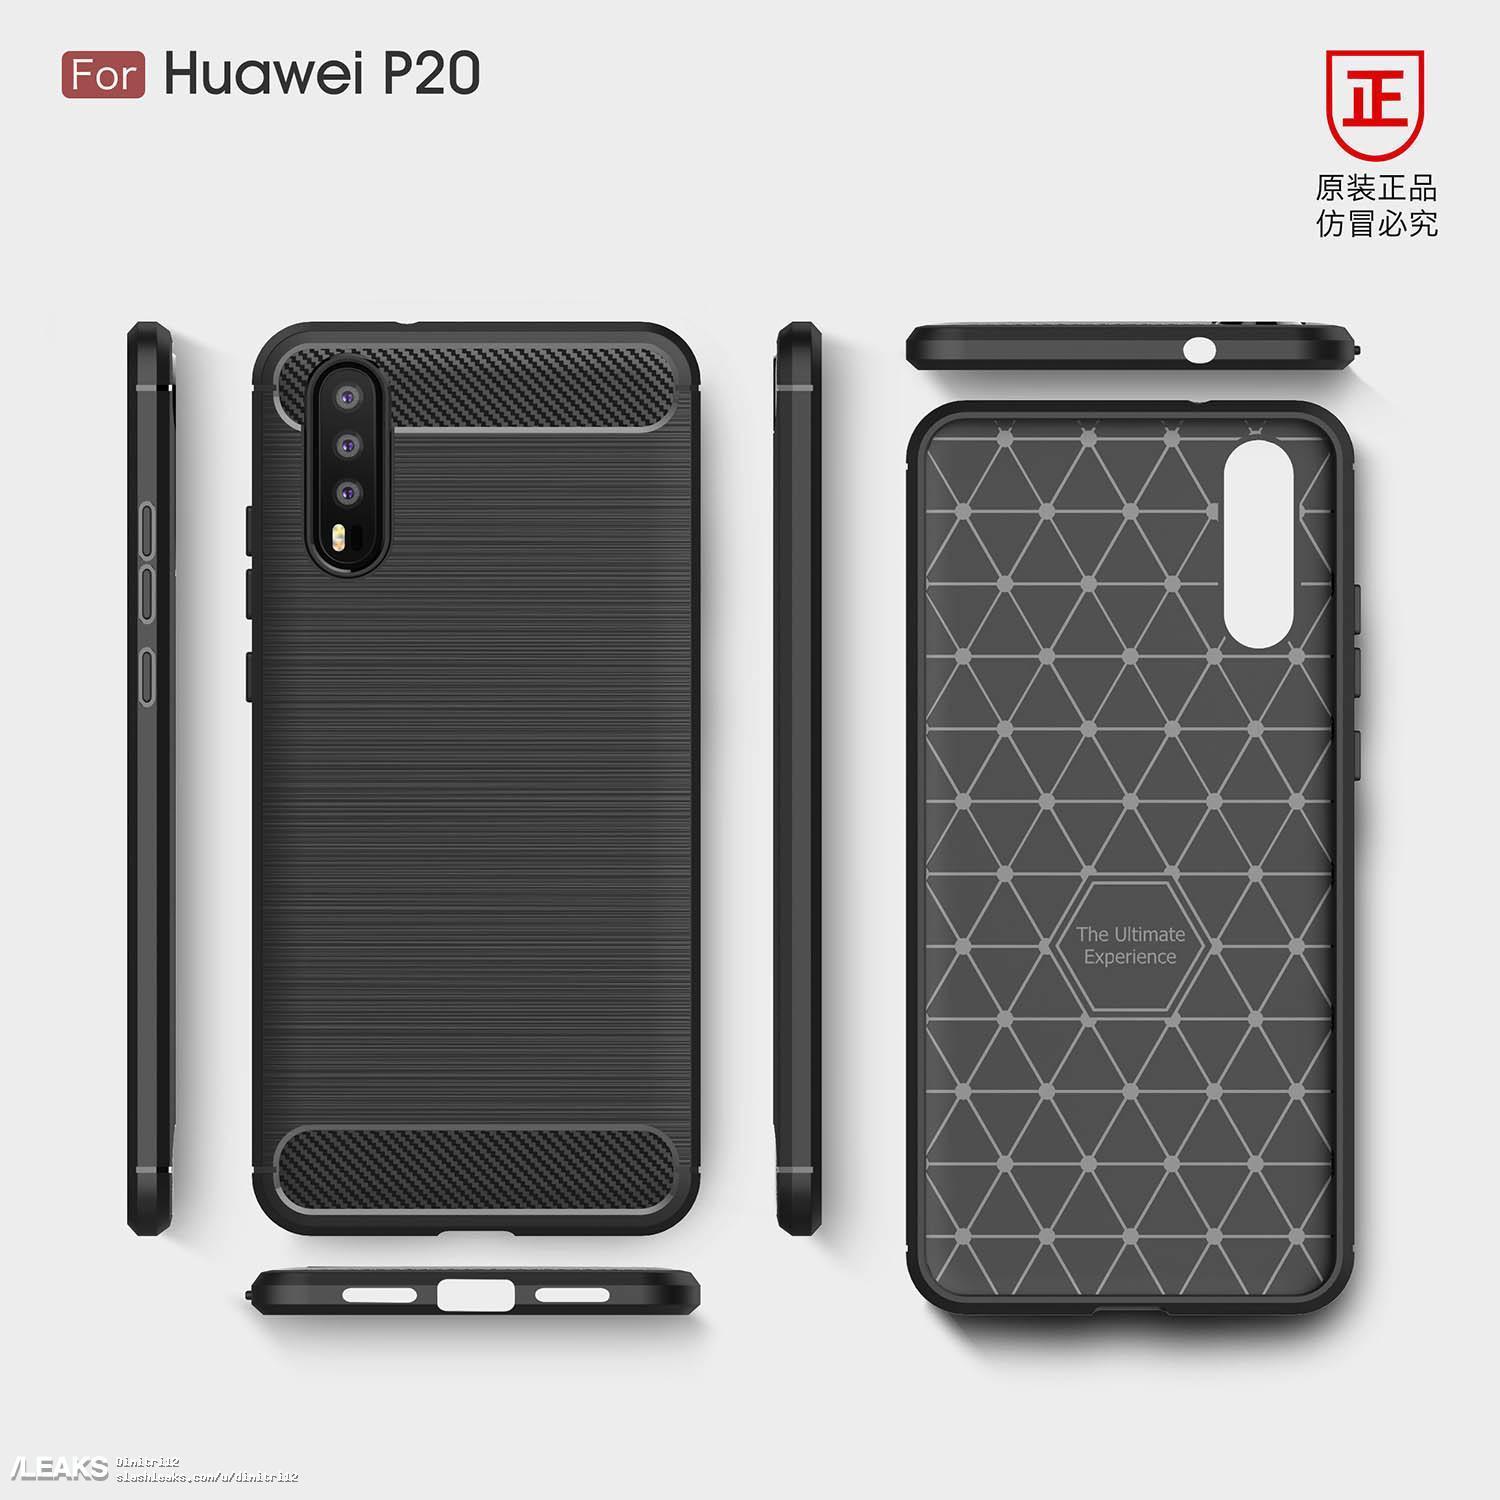 В Сети появились первые официальные фото смартфона Huawei P20 с тройной камерой